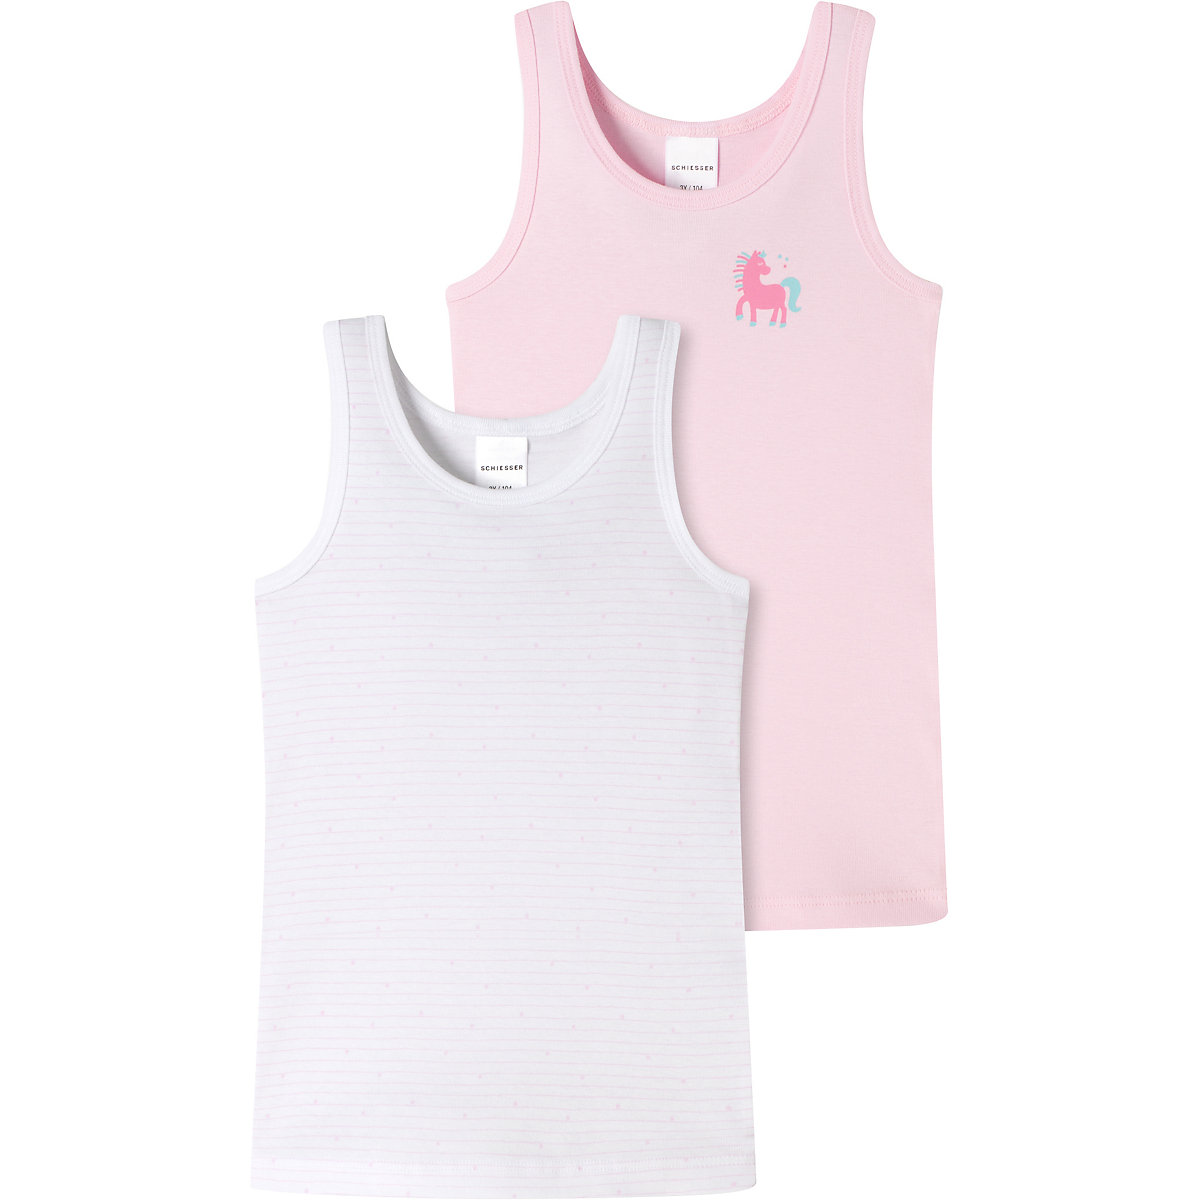 SCHIESSER Unterhemd für Mädchen rosa/weiß